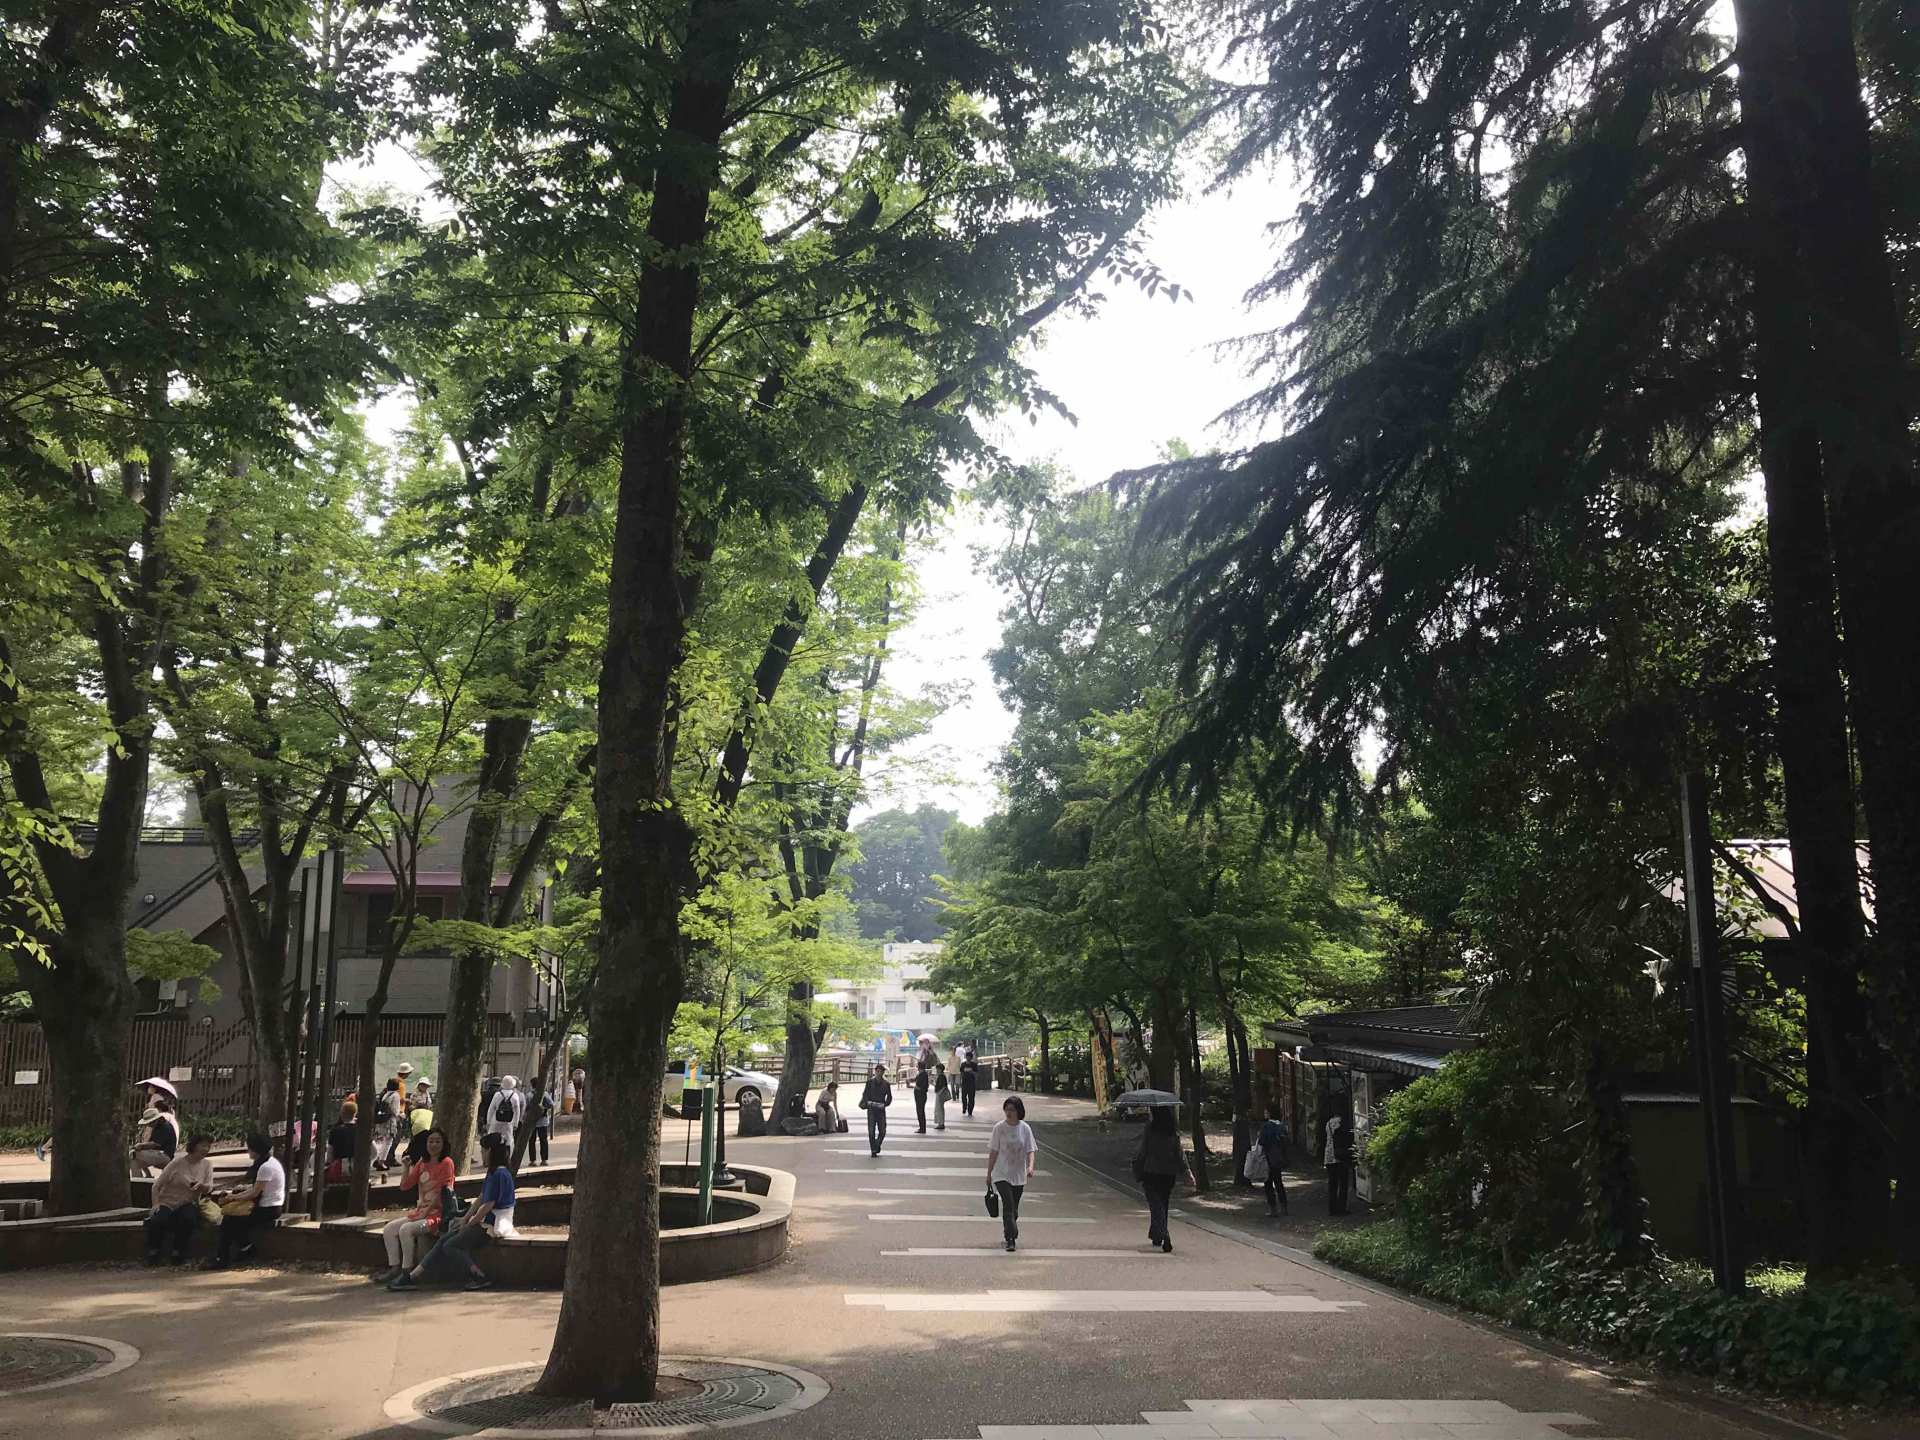  【保證入園】東京三鷹之森吉卜力美術館、井之頭公園 